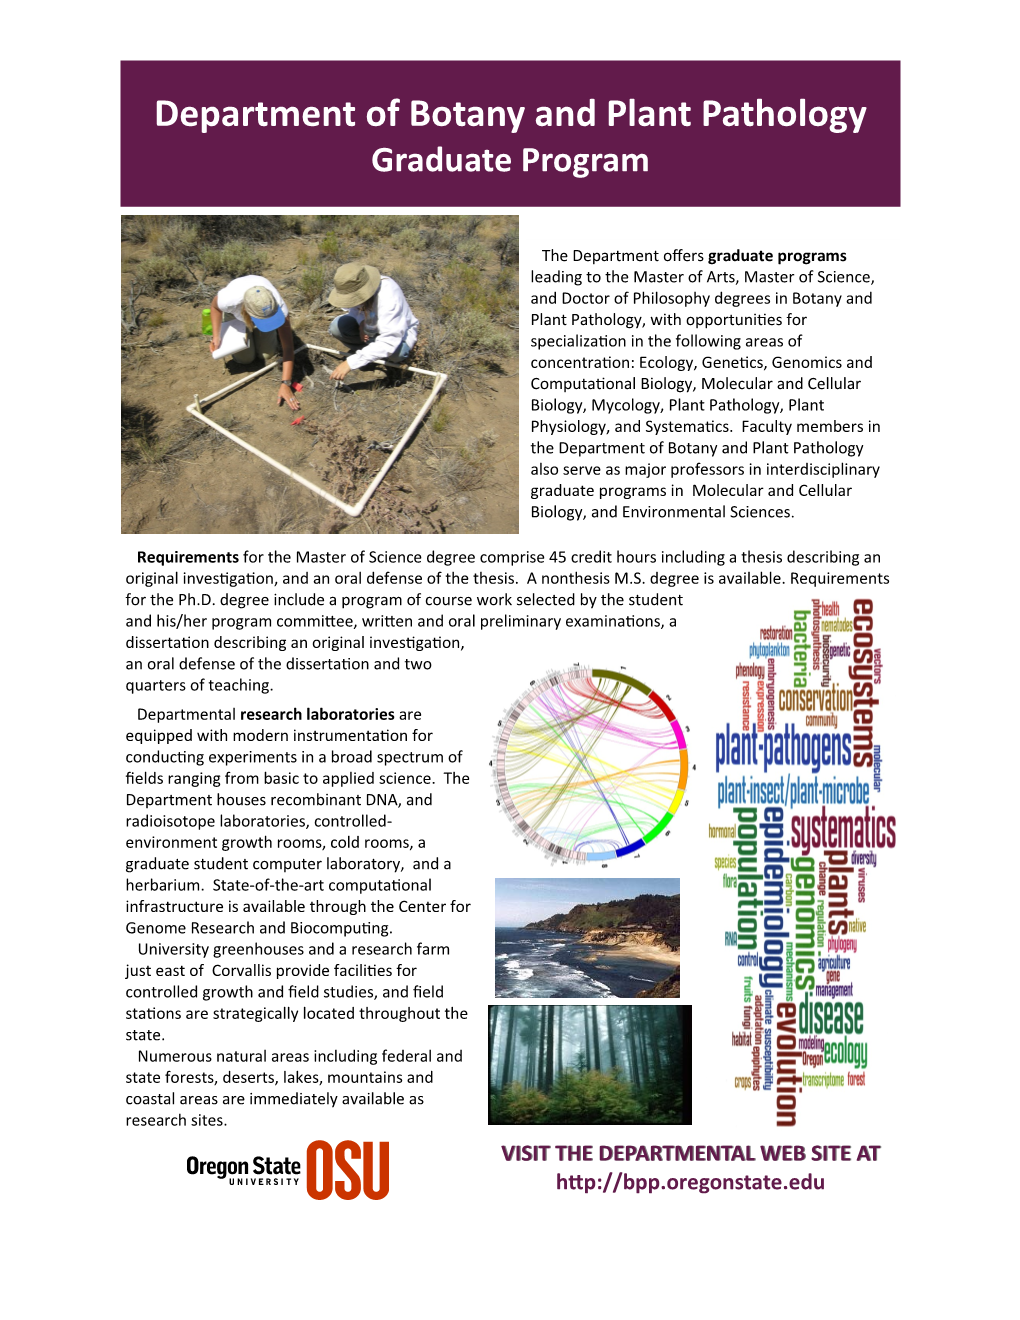 Department of Botany and Plant Pathology Graduate Program